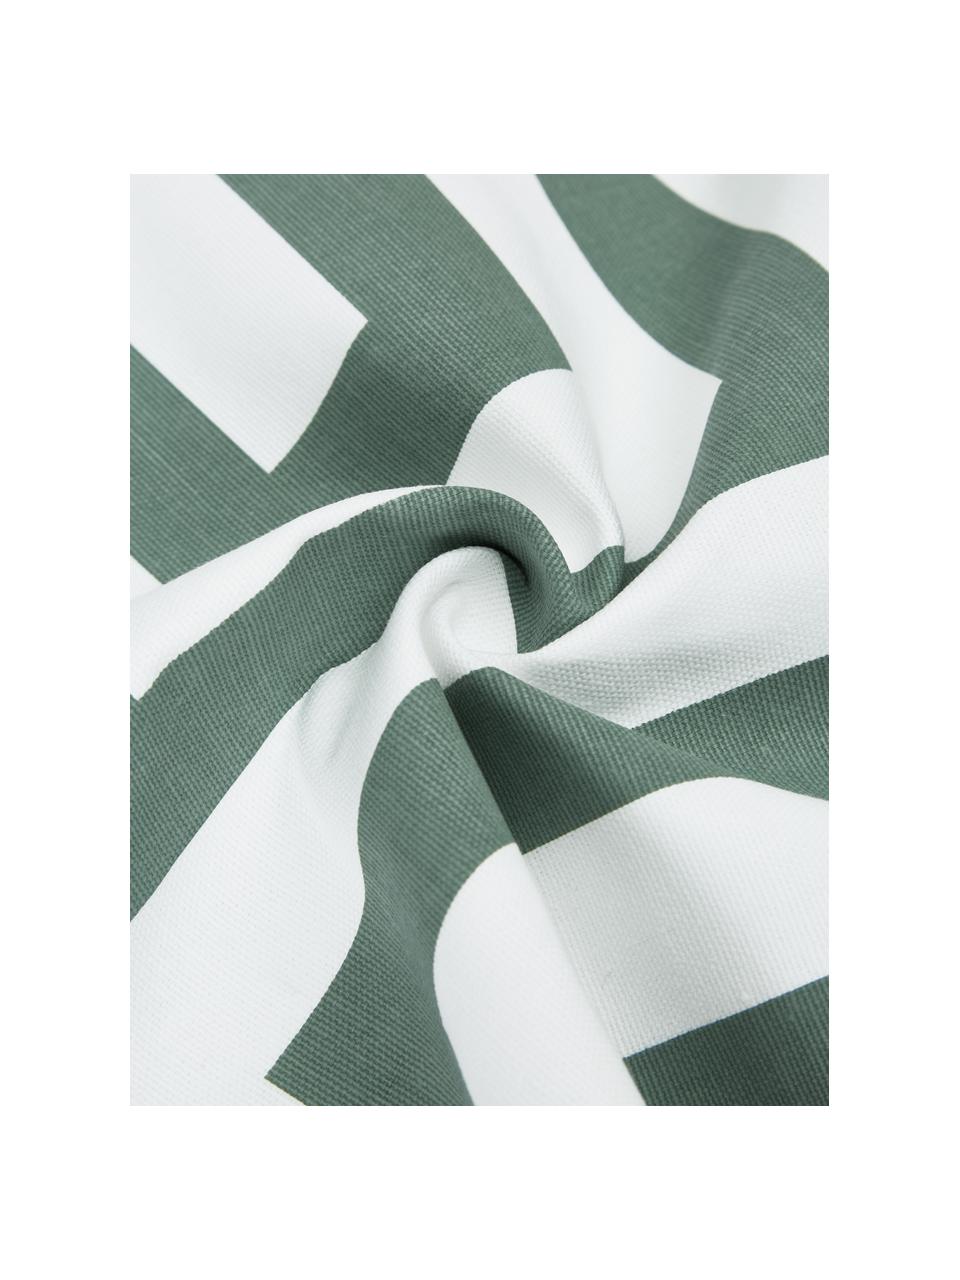 Baumwoll-Kissenhülle Bram mit grafischem Muster, 100% Baumwolle, Weiß, Salbeigrün, B 45 x L 45 cm